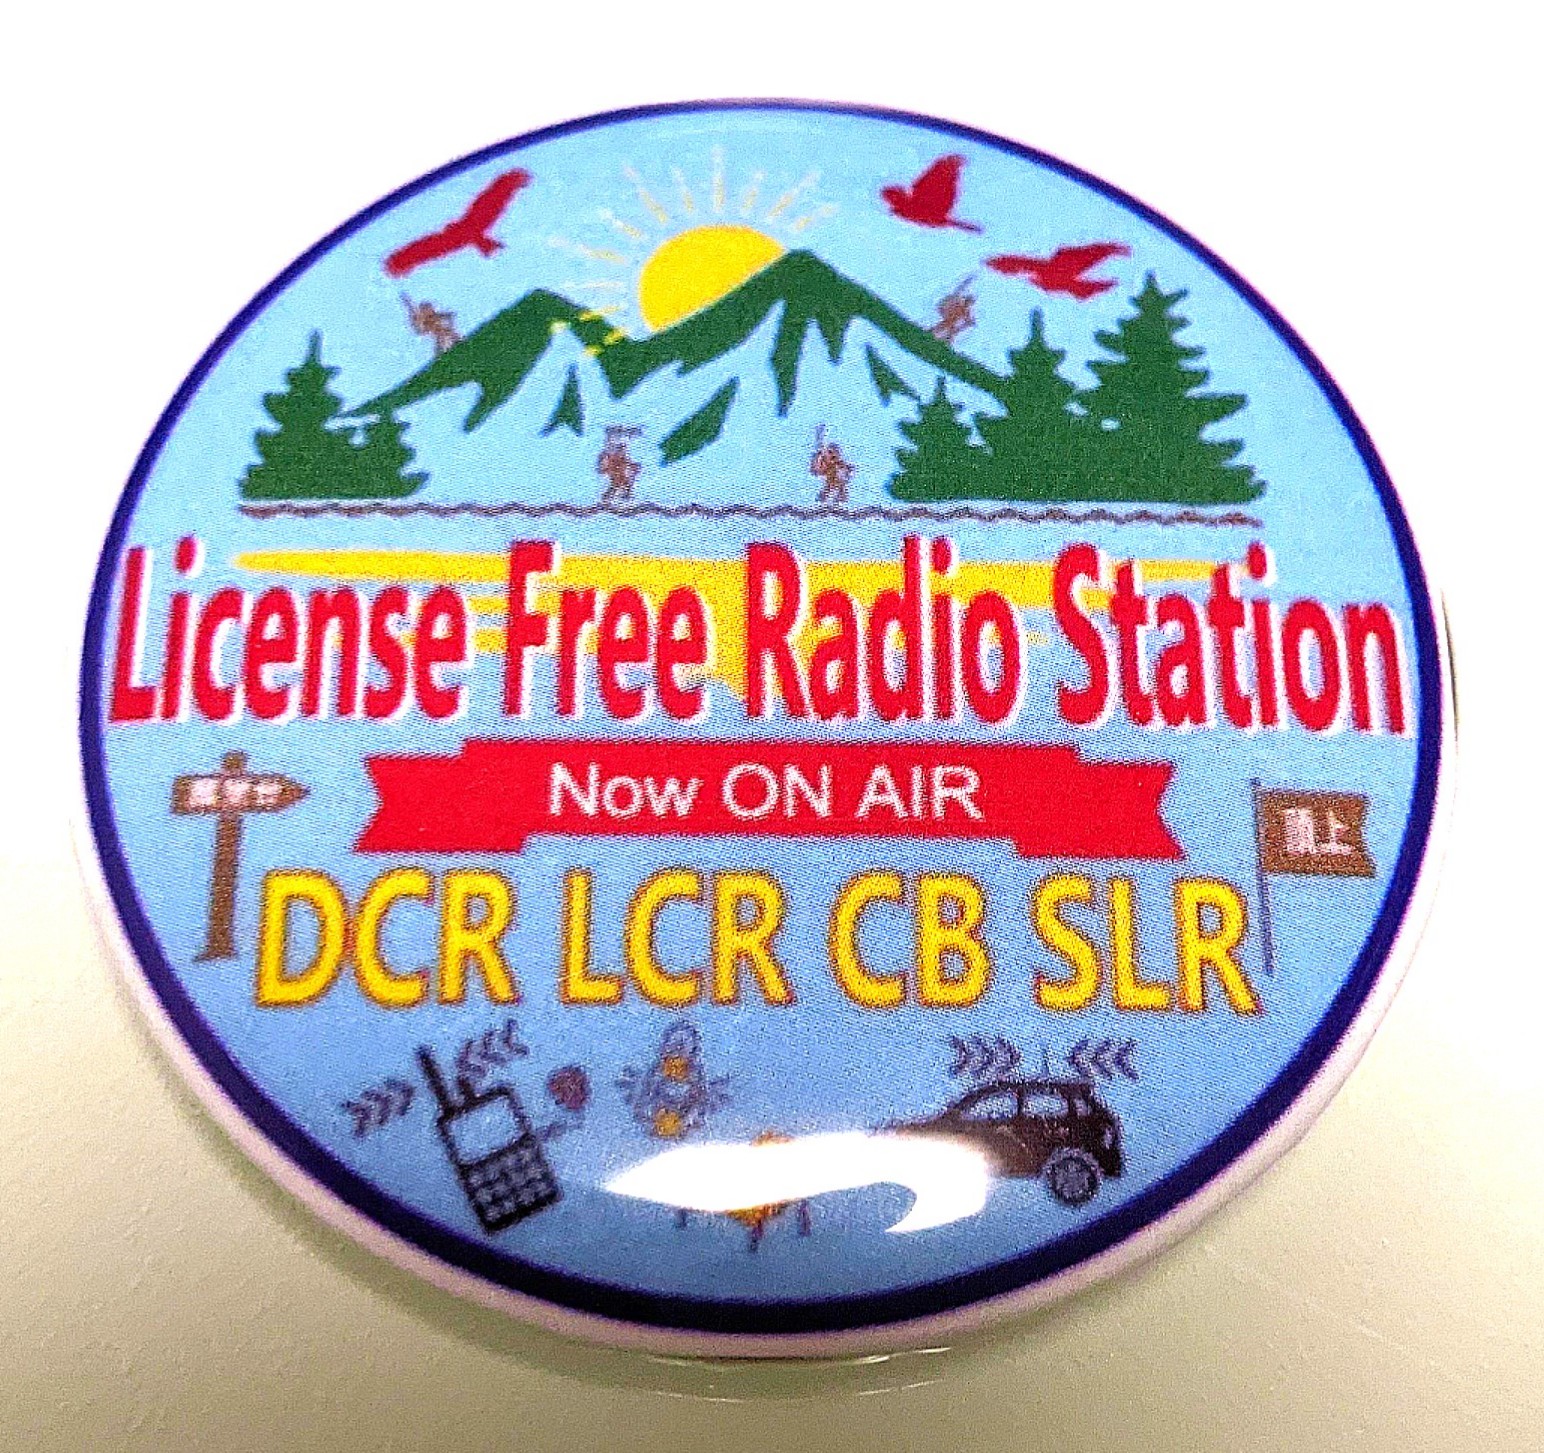 ライセンスフリーラジオ局 オリジナルバッジ